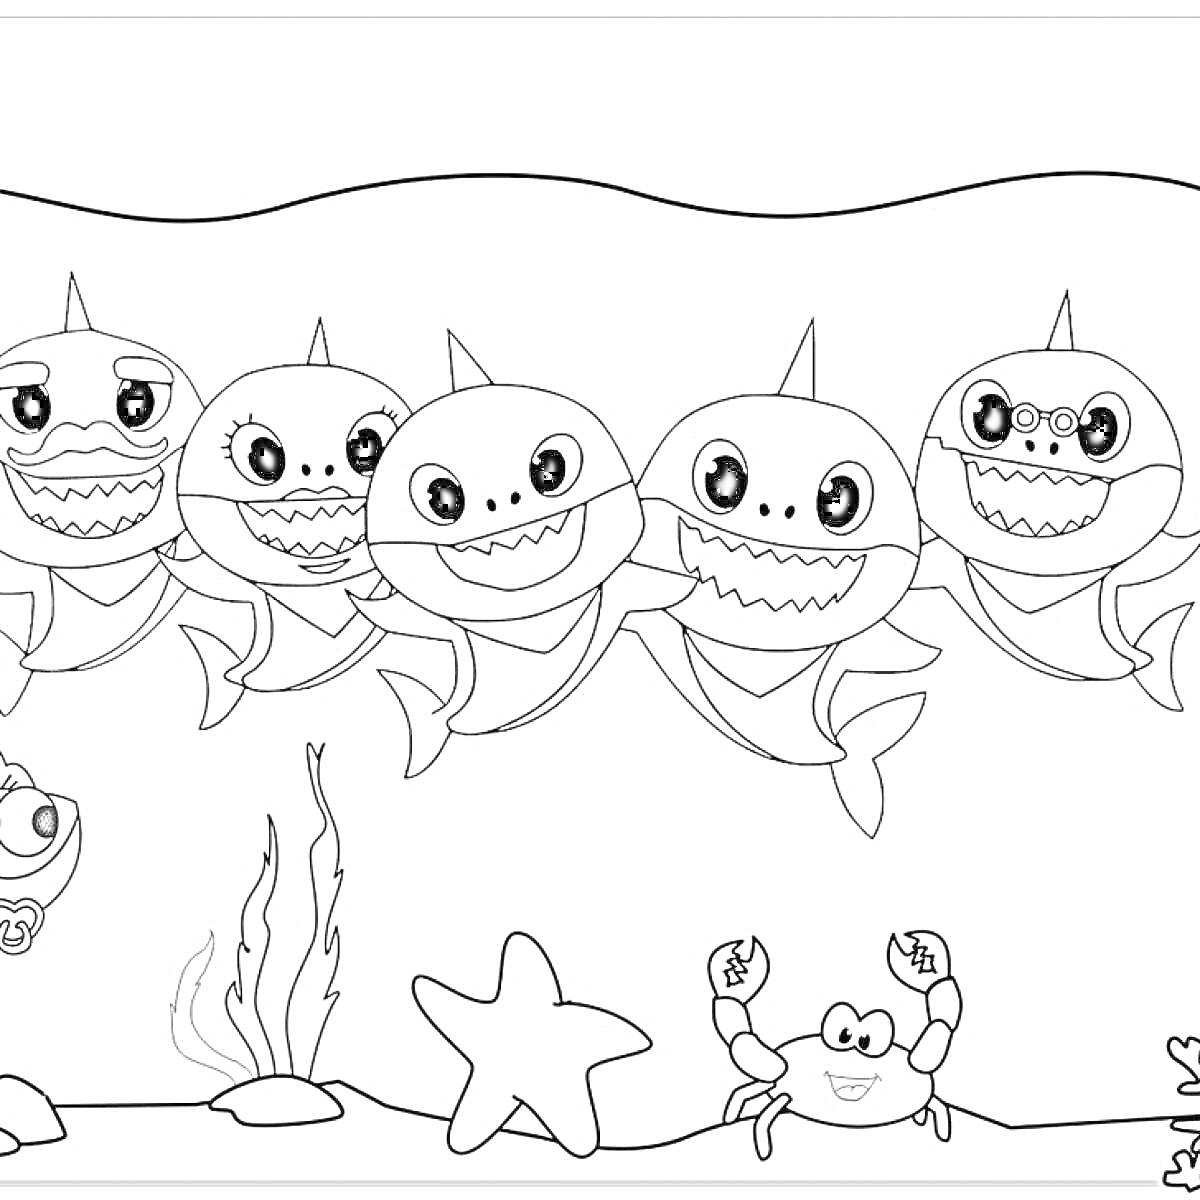 Раскраска Семья акул в подводном мире с рыбкой, крабом, морской звездой и водорослями